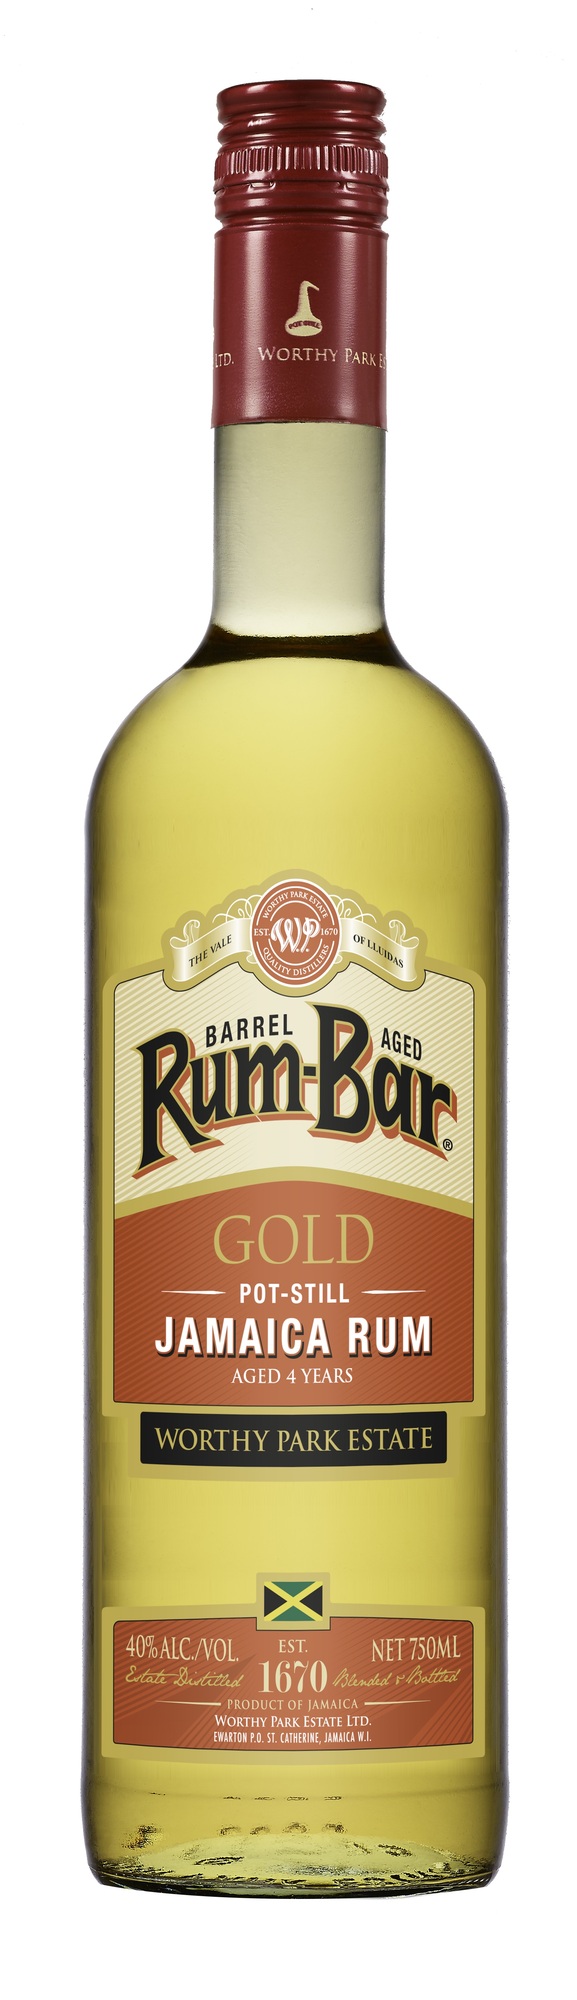 Worthy Park, Rum-Bar Gold, 4 Y.O.